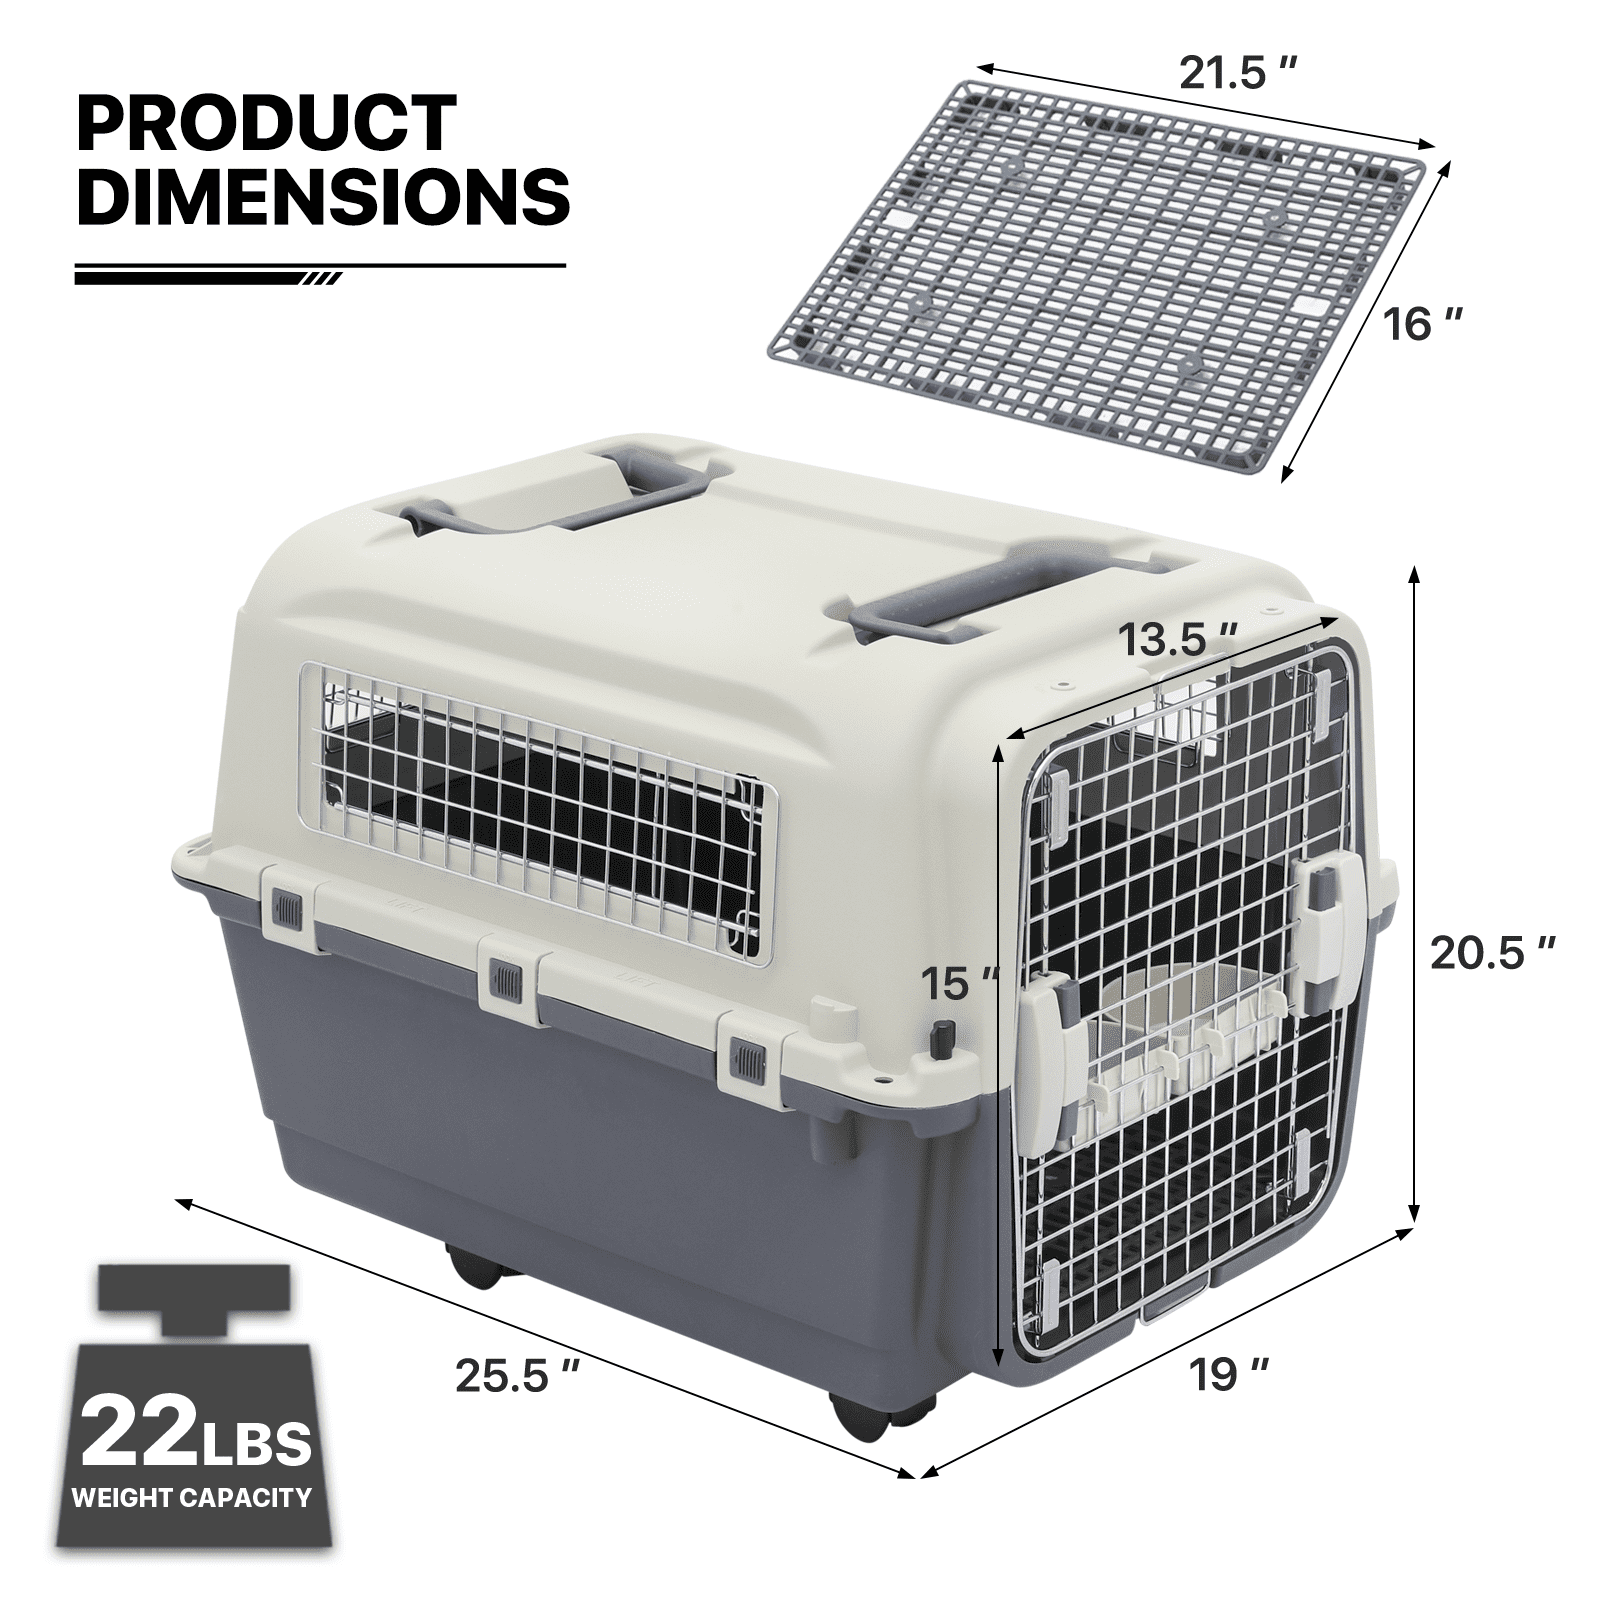 Pets Budget Cage De Transport 32,5x48x29cm(Max 3Kg)